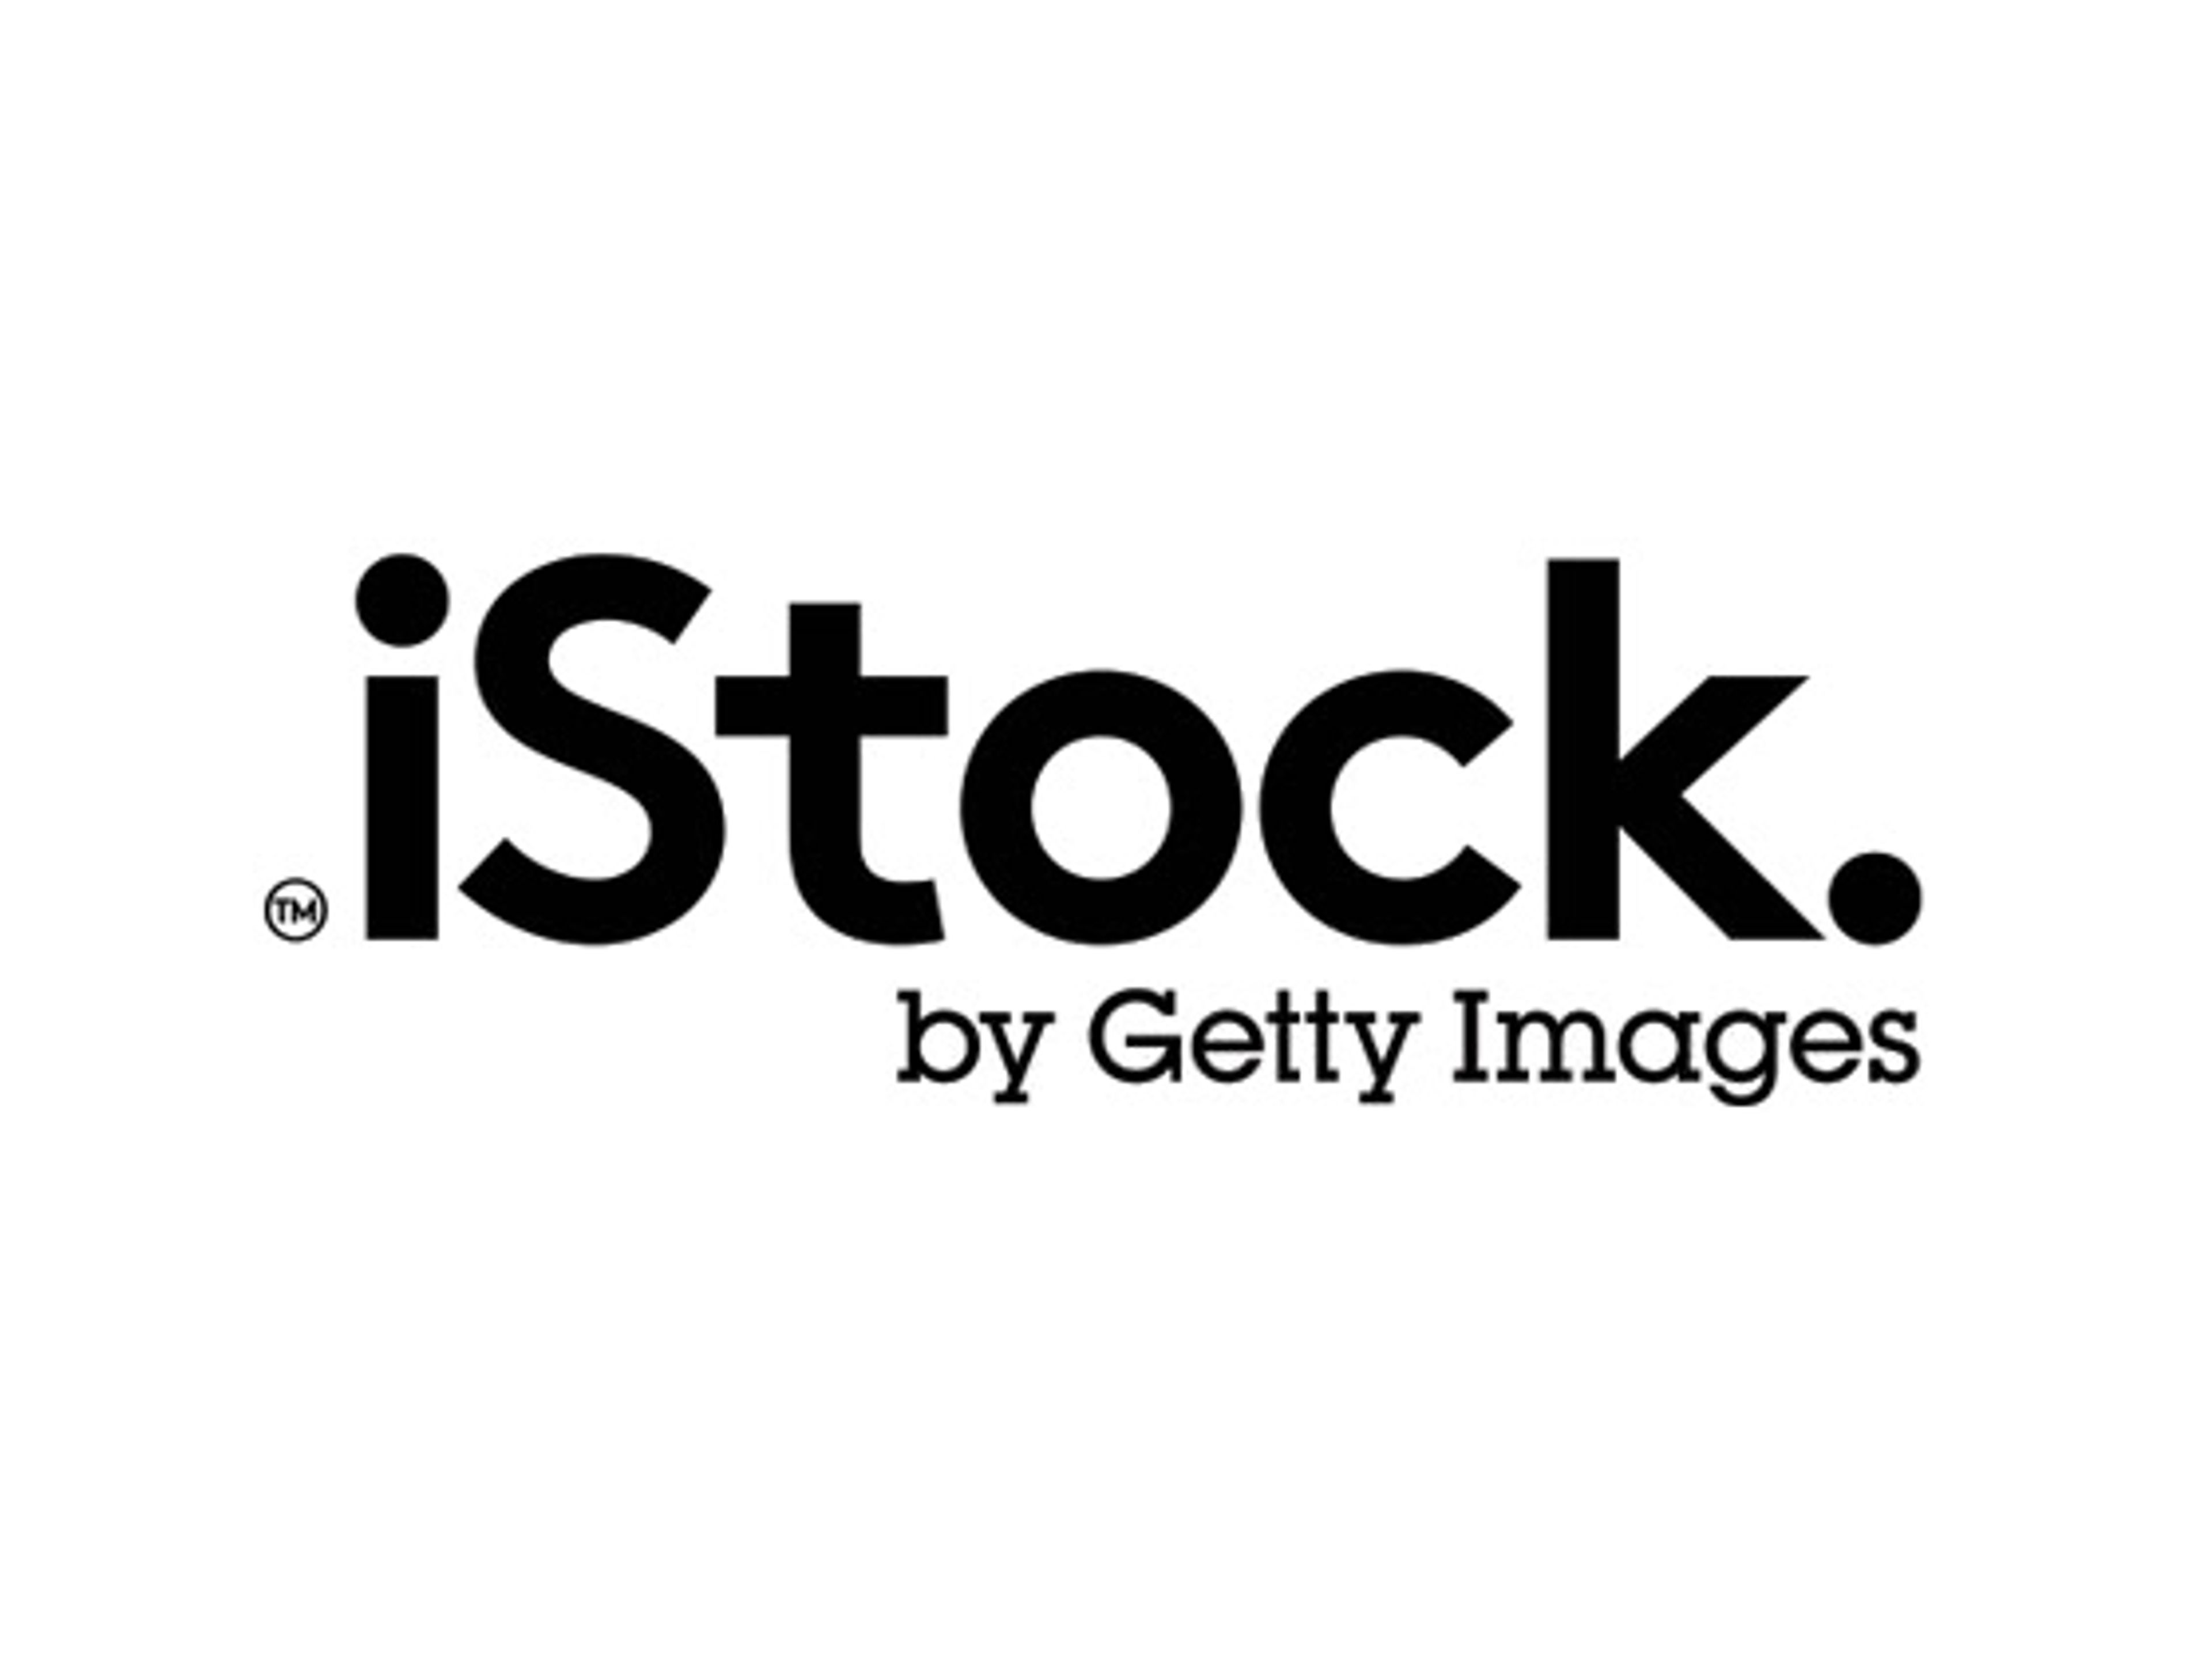 iStock优惠券